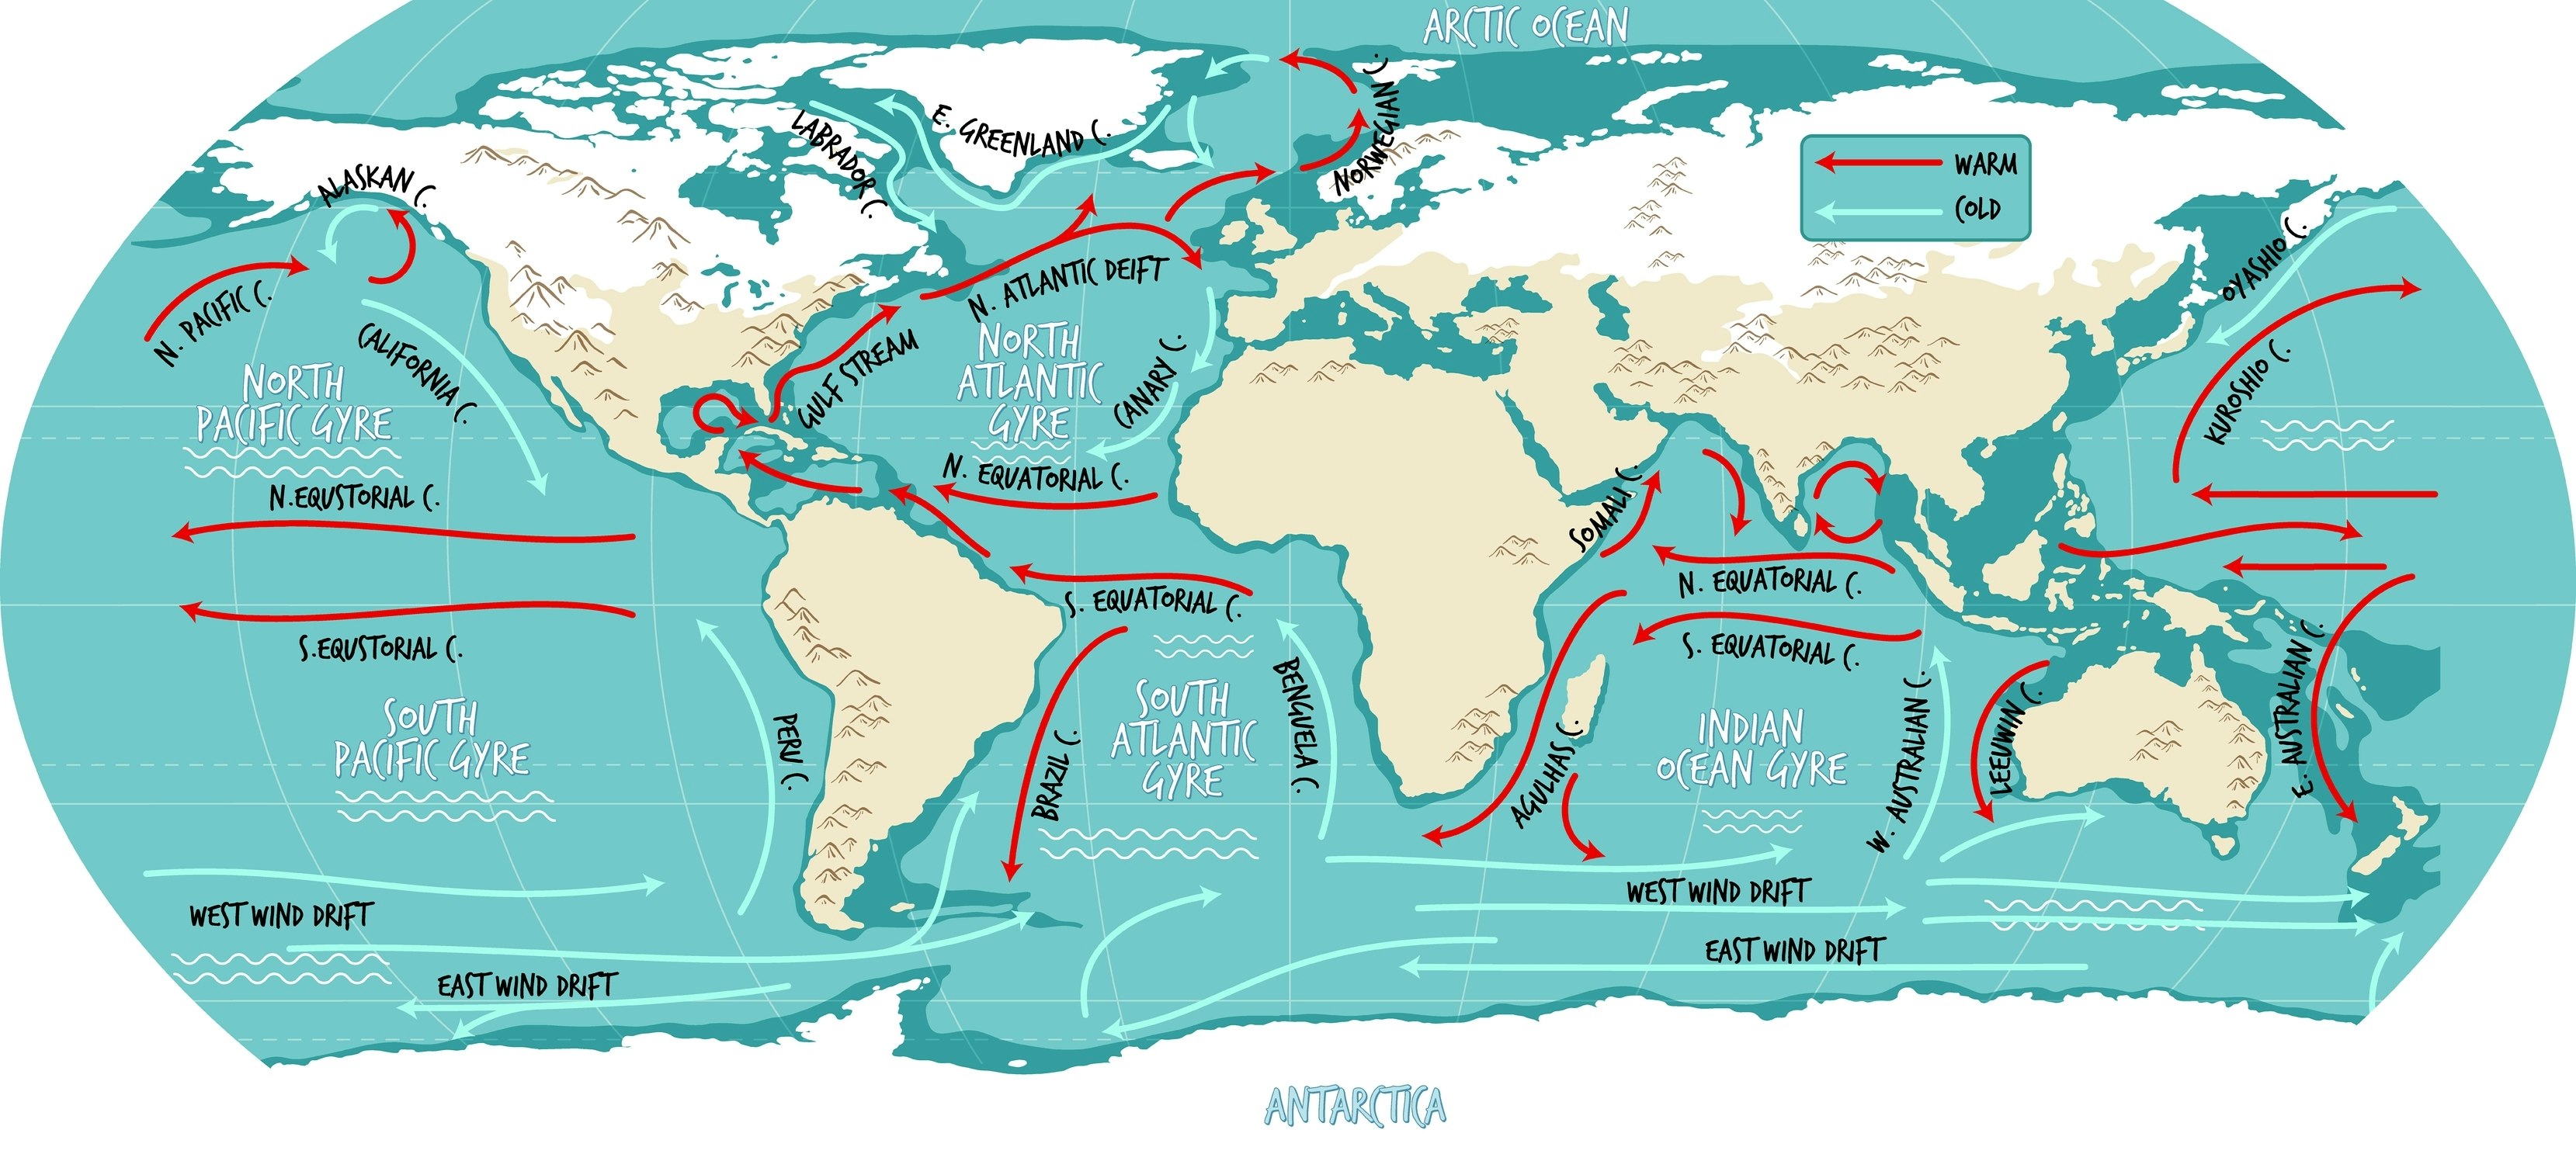 Carte mondiale illustrative des courants océaniques avec leurs noms.